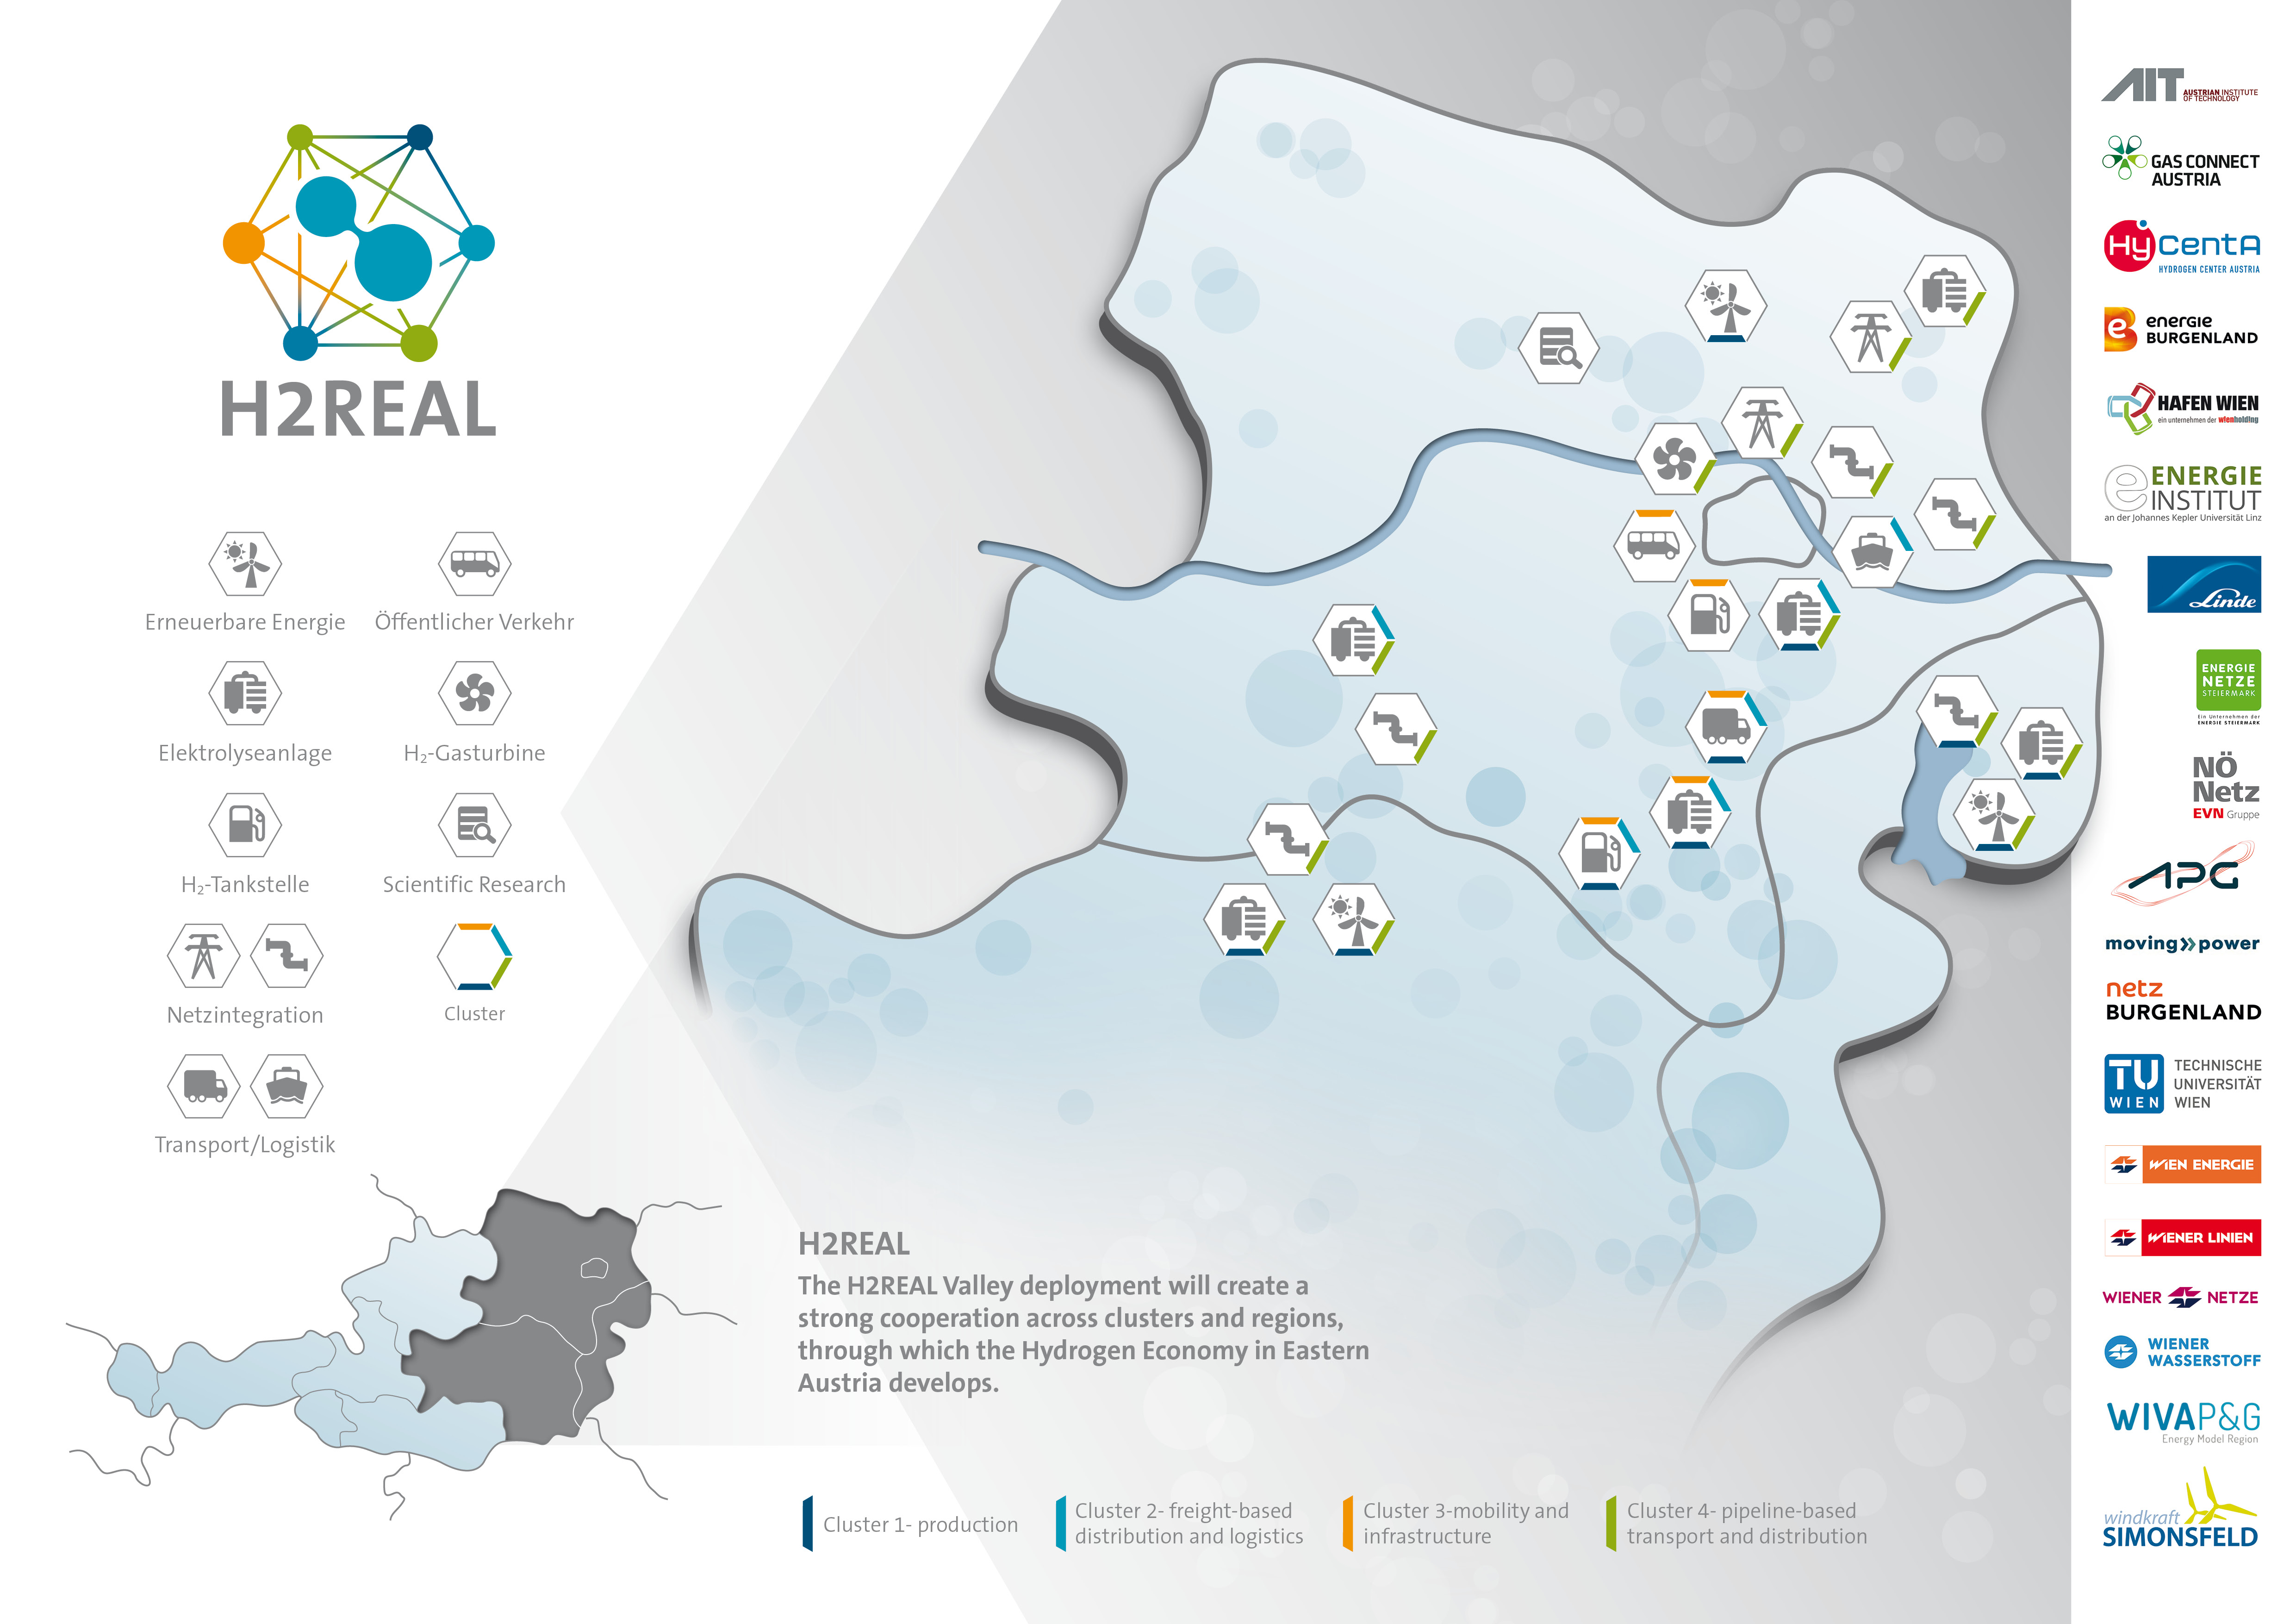 Karte von Ostösterreich in der die Projektpartner eingezeichten sind und ihre Leistungen sowie gebildete Cluster